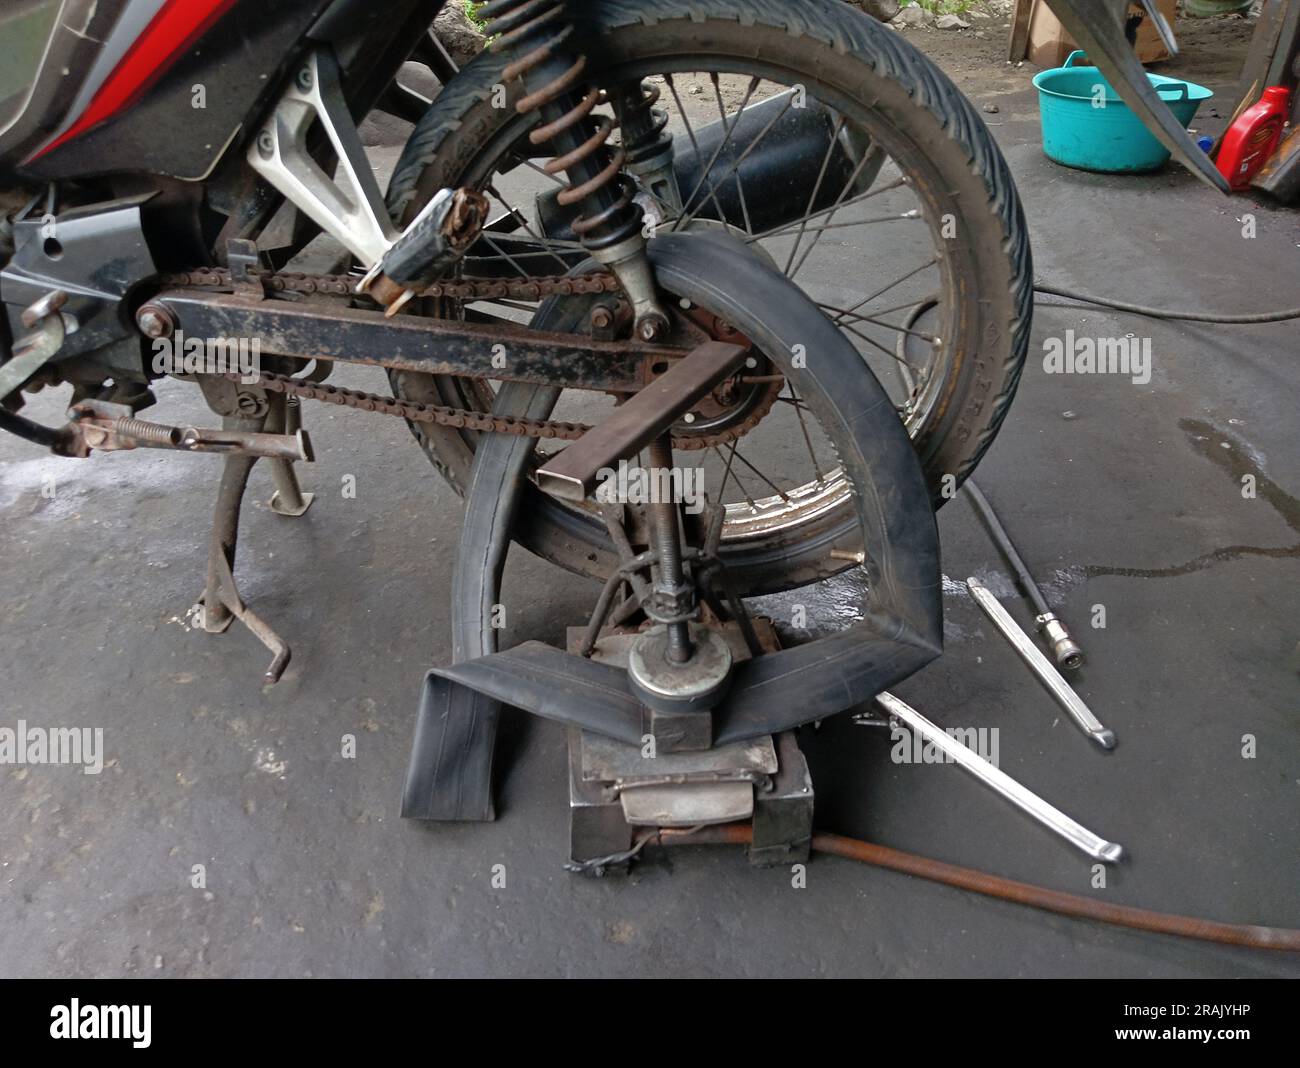 Una motocicletta il cui pneumatico posteriore viene forato e applicato con l'attrezzatura tradizionale di riparazione degli pneumatici in un'officina di riparazione. Foto Stock